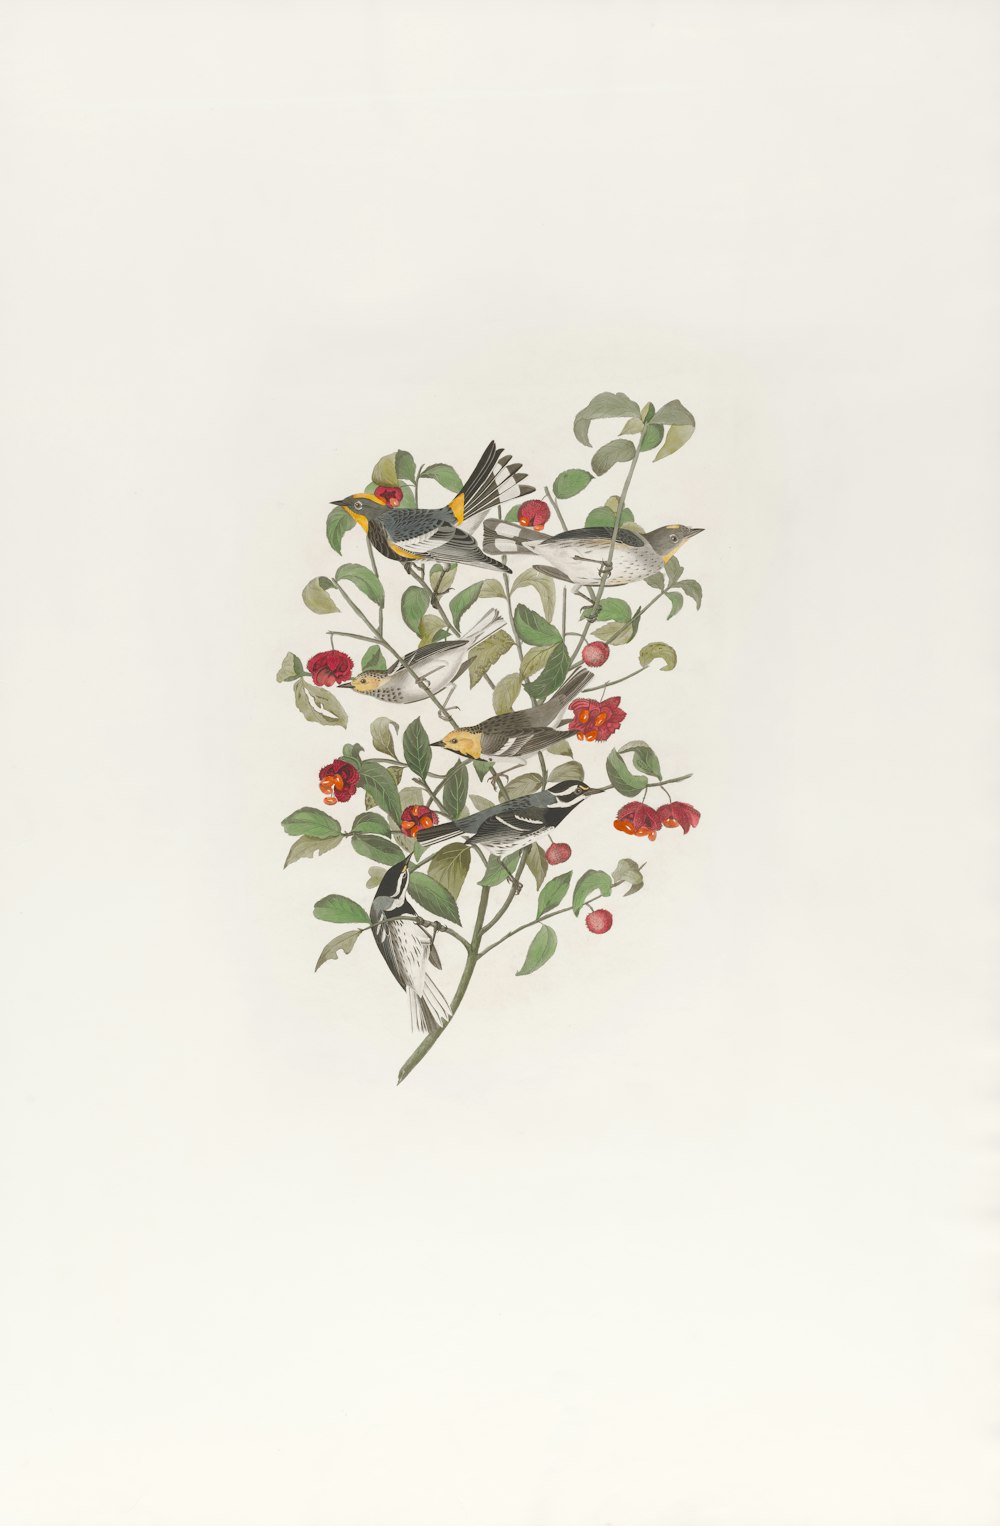 ein Gemälde von Vögeln auf einem Zweig mit roten Beeren